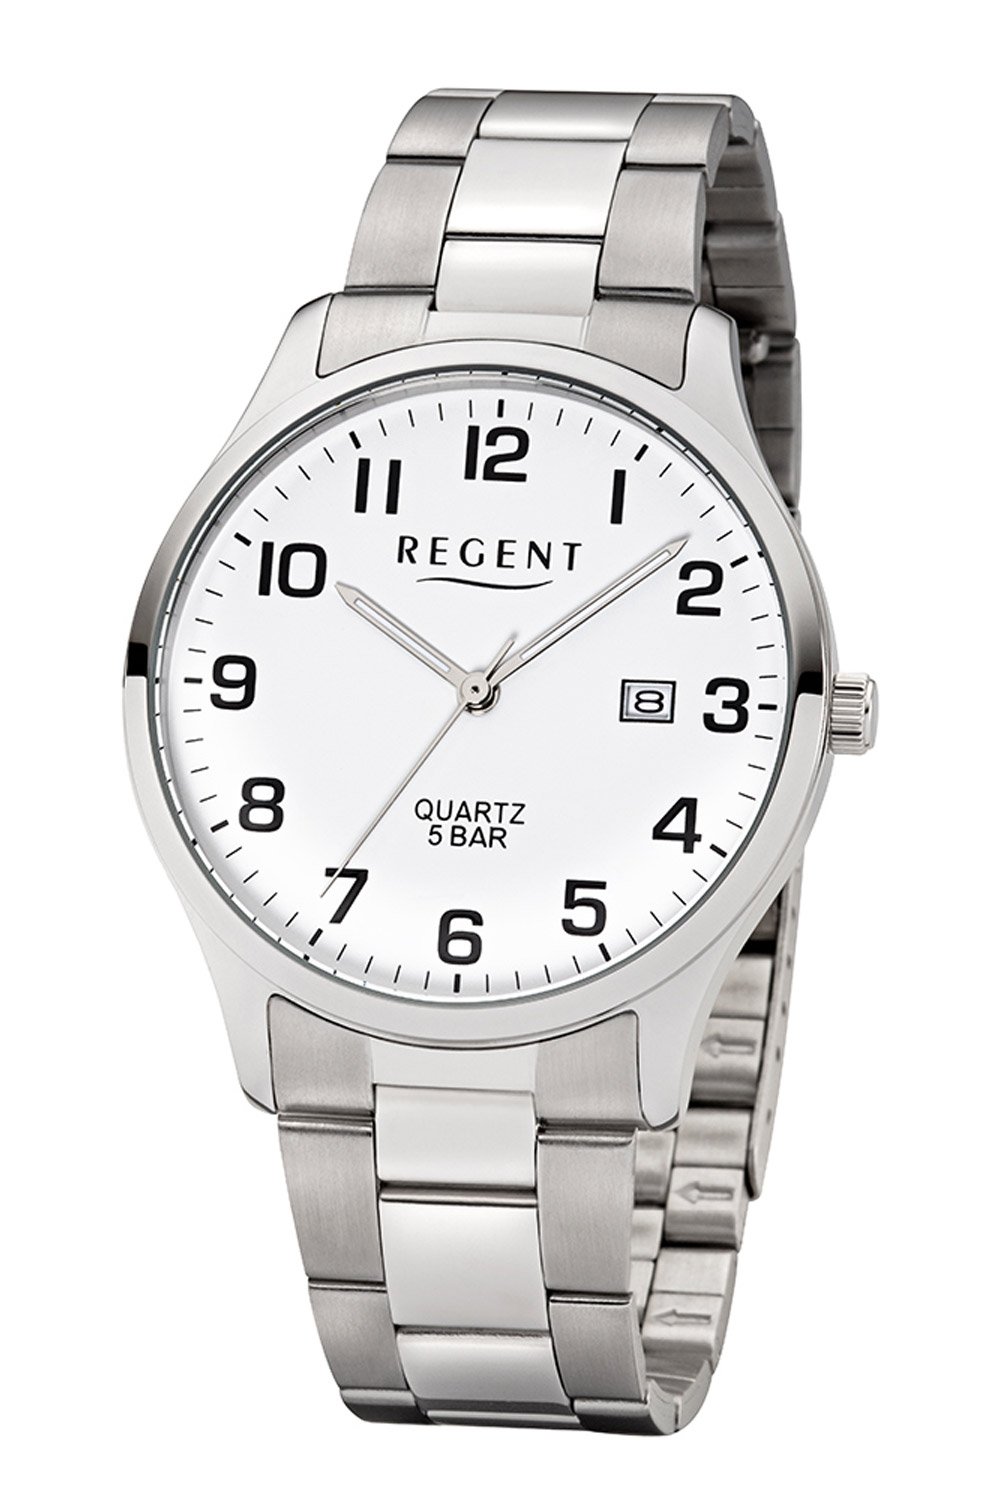 Regent Men's Watch with Steel Strap White F-1178 • uhrcenter